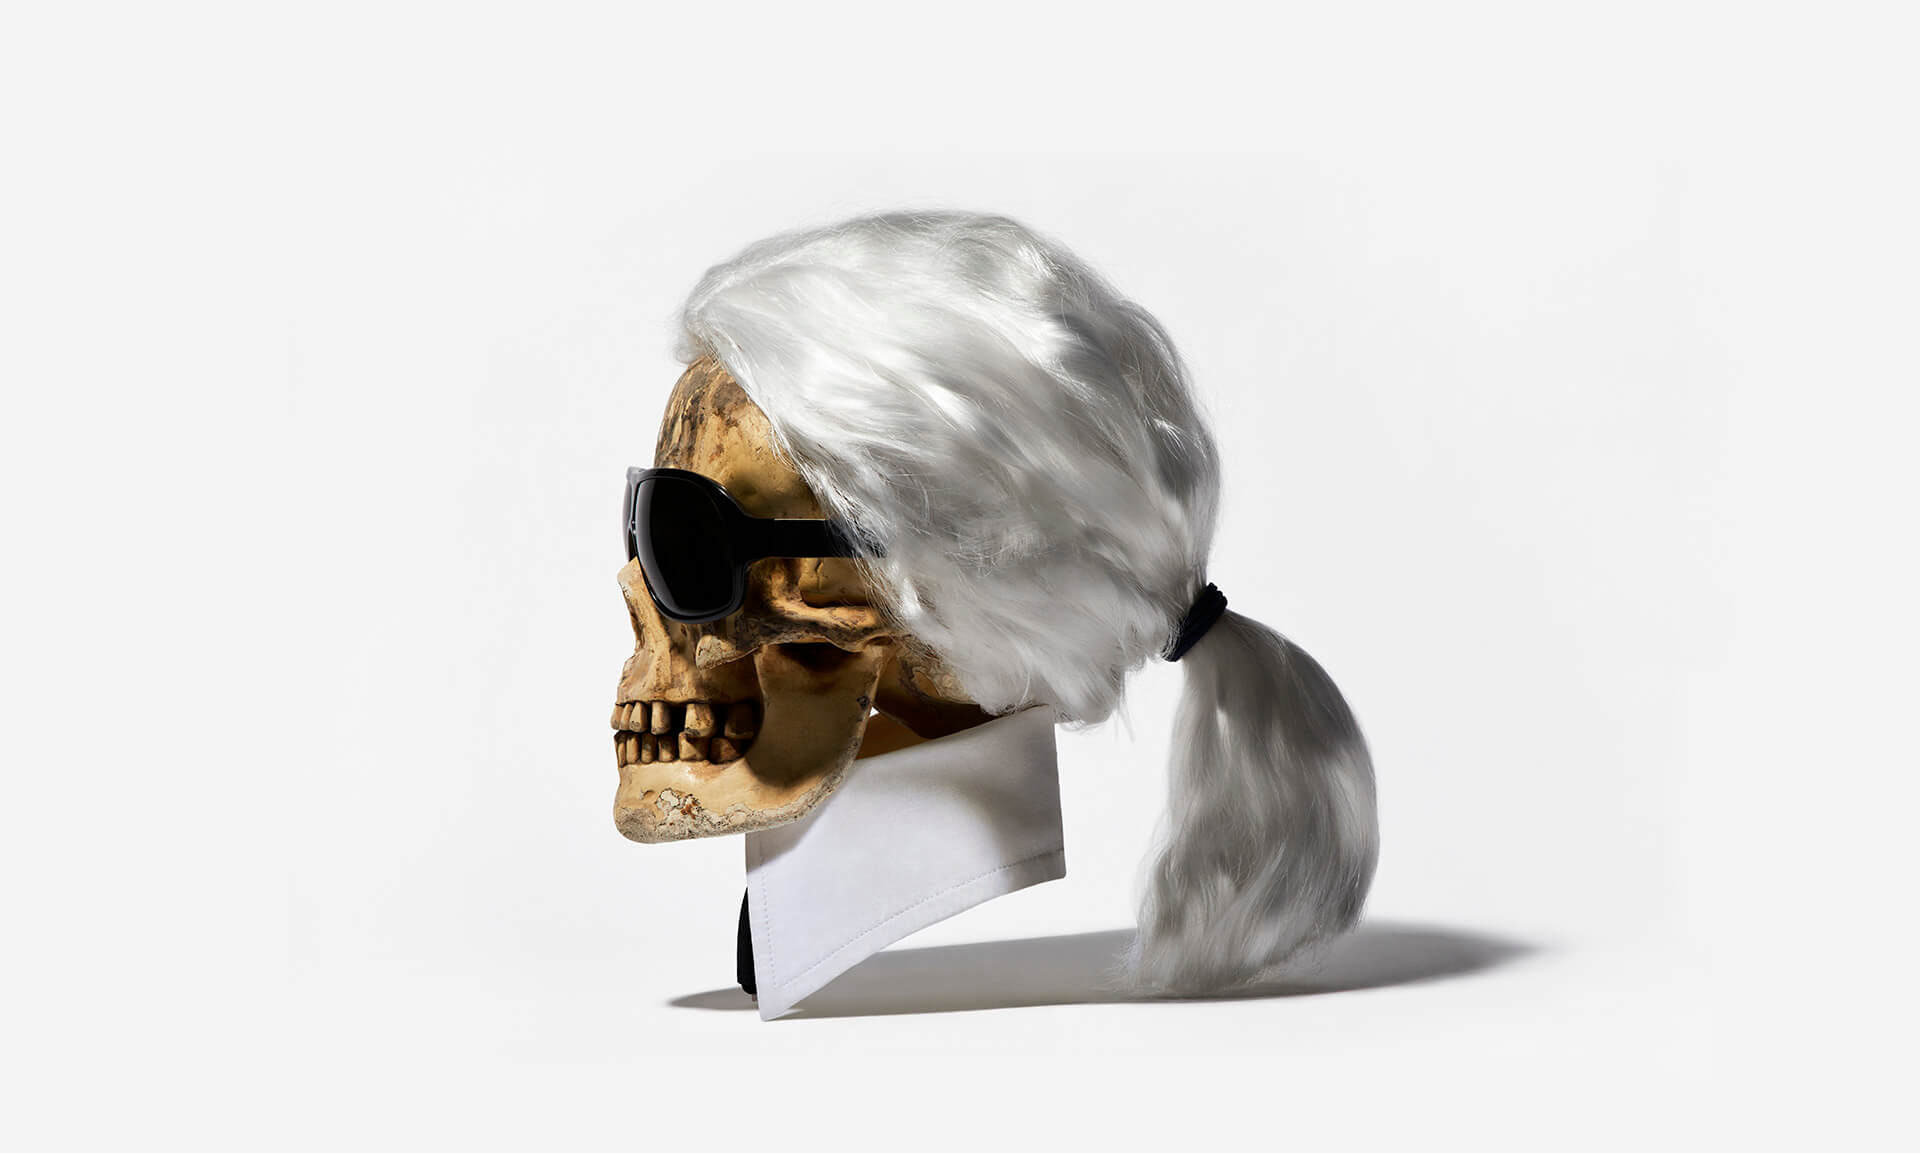 Karl-by-Sintora-Exhibition-Memento-Mori-artist-skull-1920x1153